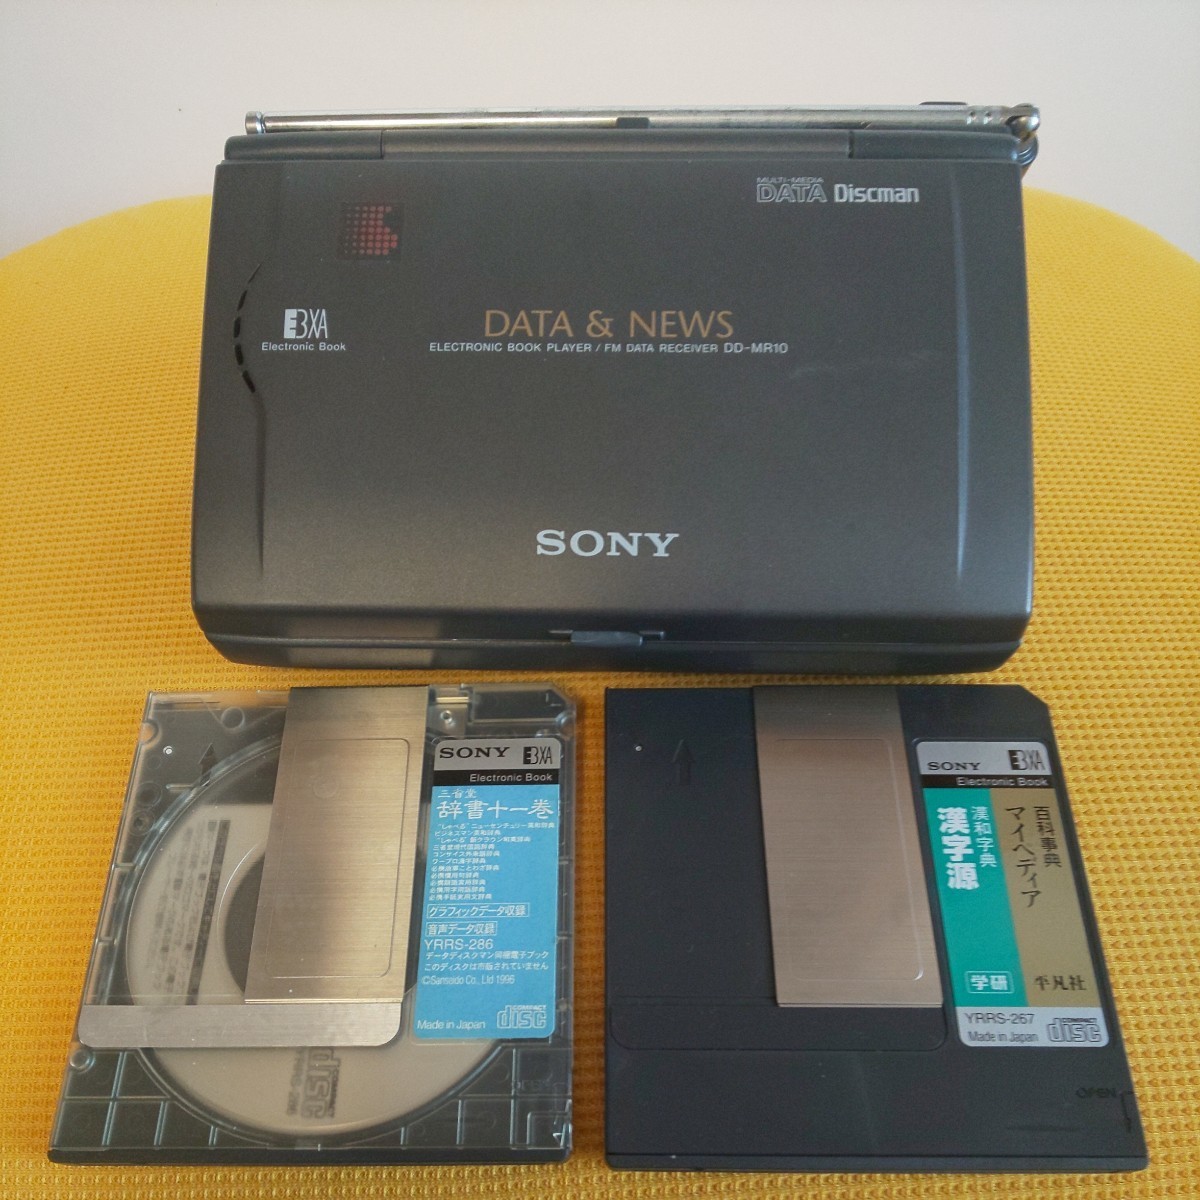 ジャンク ソニー SONY DATA Discman DD-MR10 electronic book player/fm data receiver_画像3